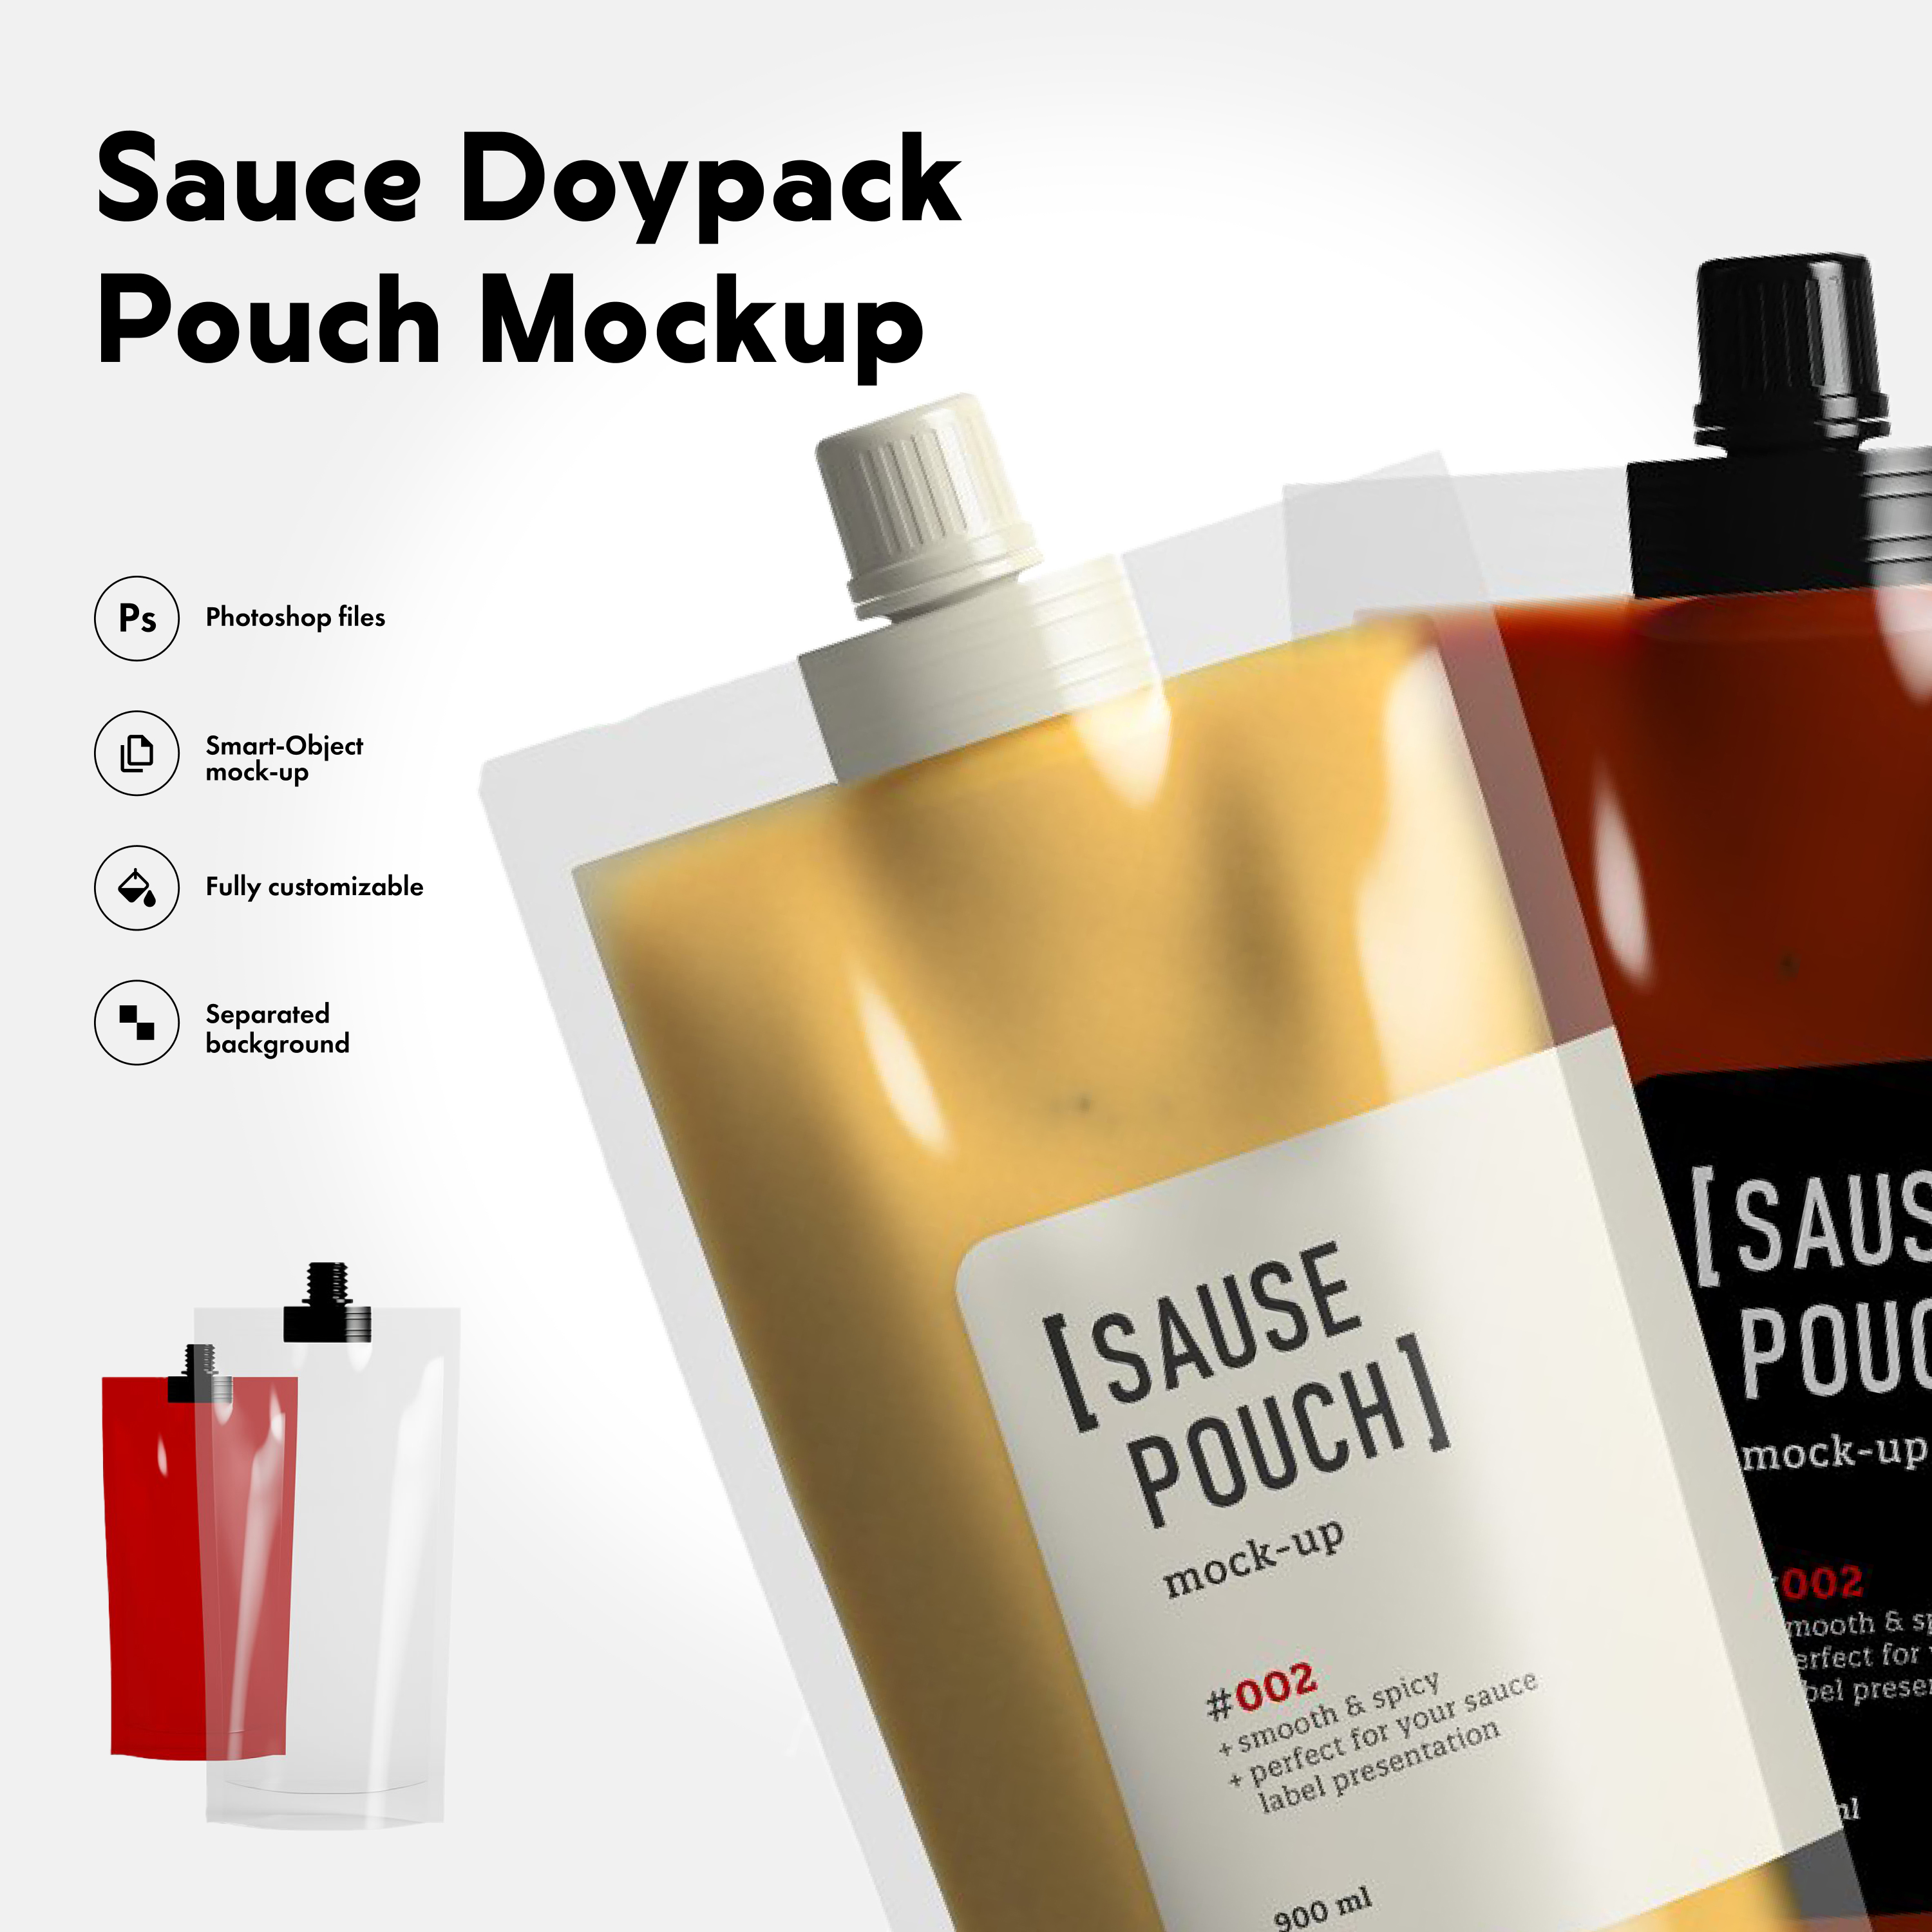 Spices Pouch Doypack Mockup 6000x4500px – MasterBundles